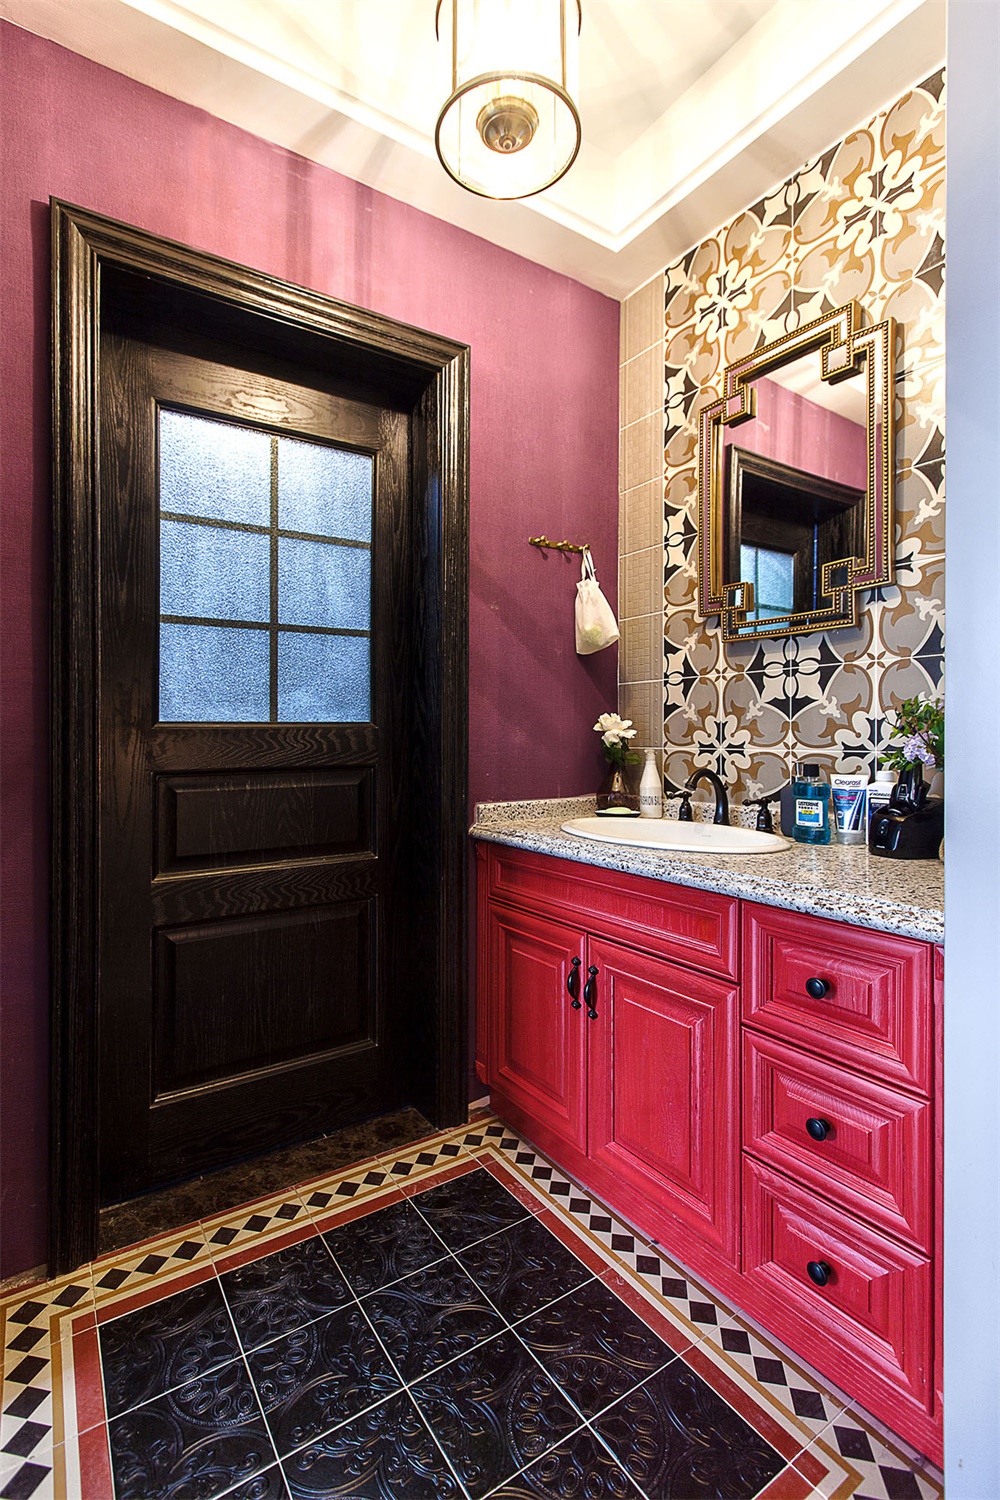 空间用色明亮，细节处的材质运用具有高级奢华感，不论是洗手台还是镜子，独特而华美。